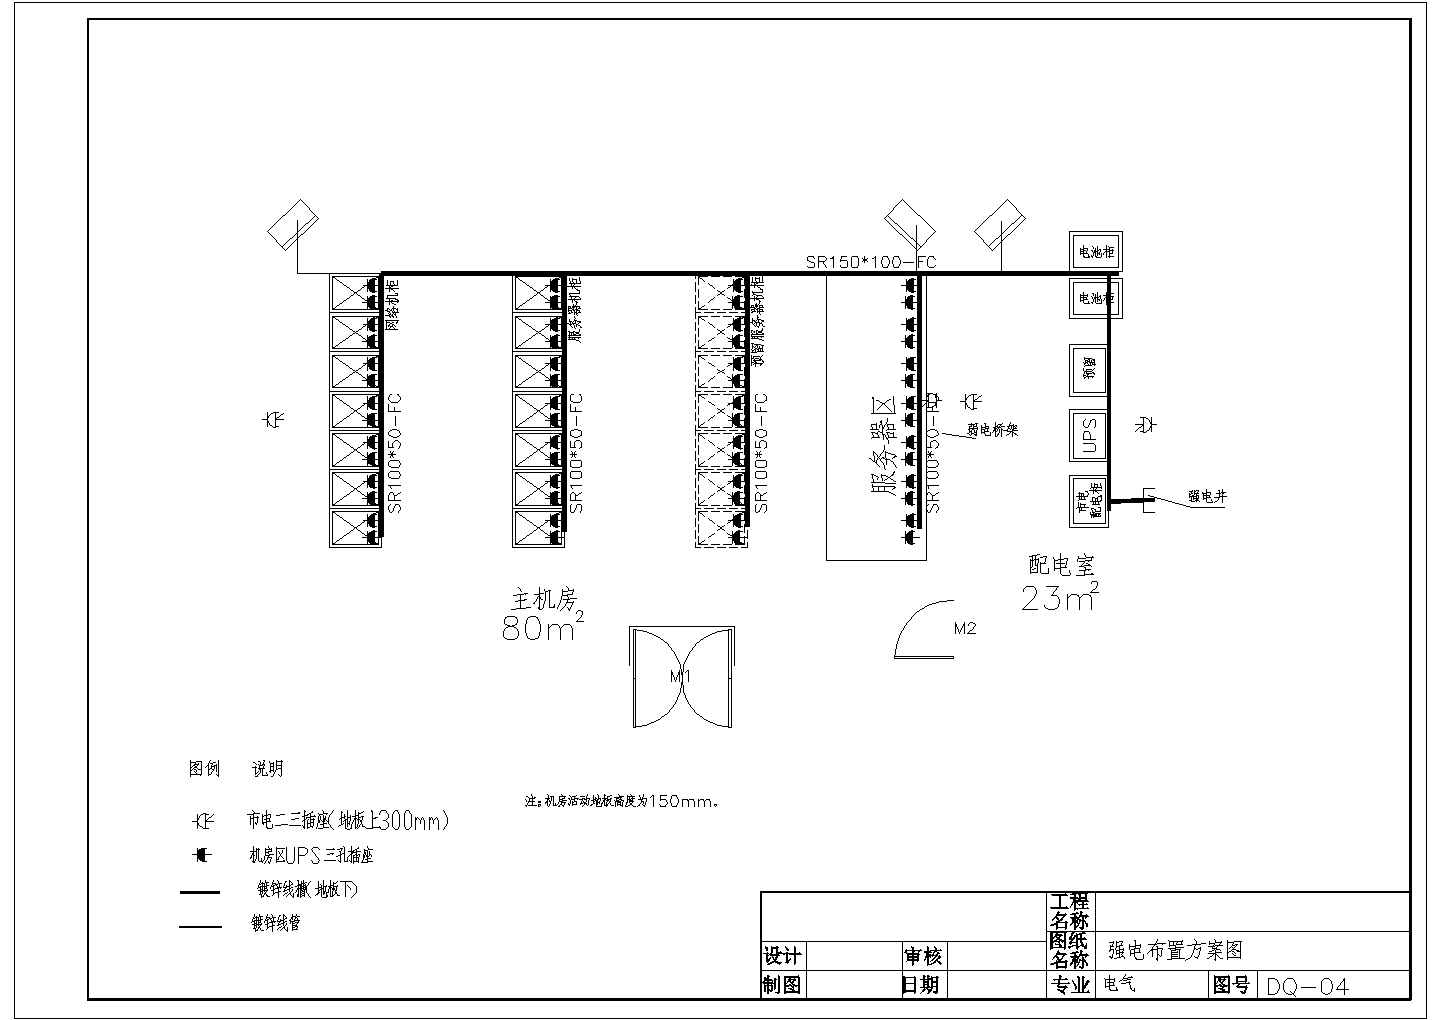 机房工程消防电气设计方案及施工全套CAD图纸